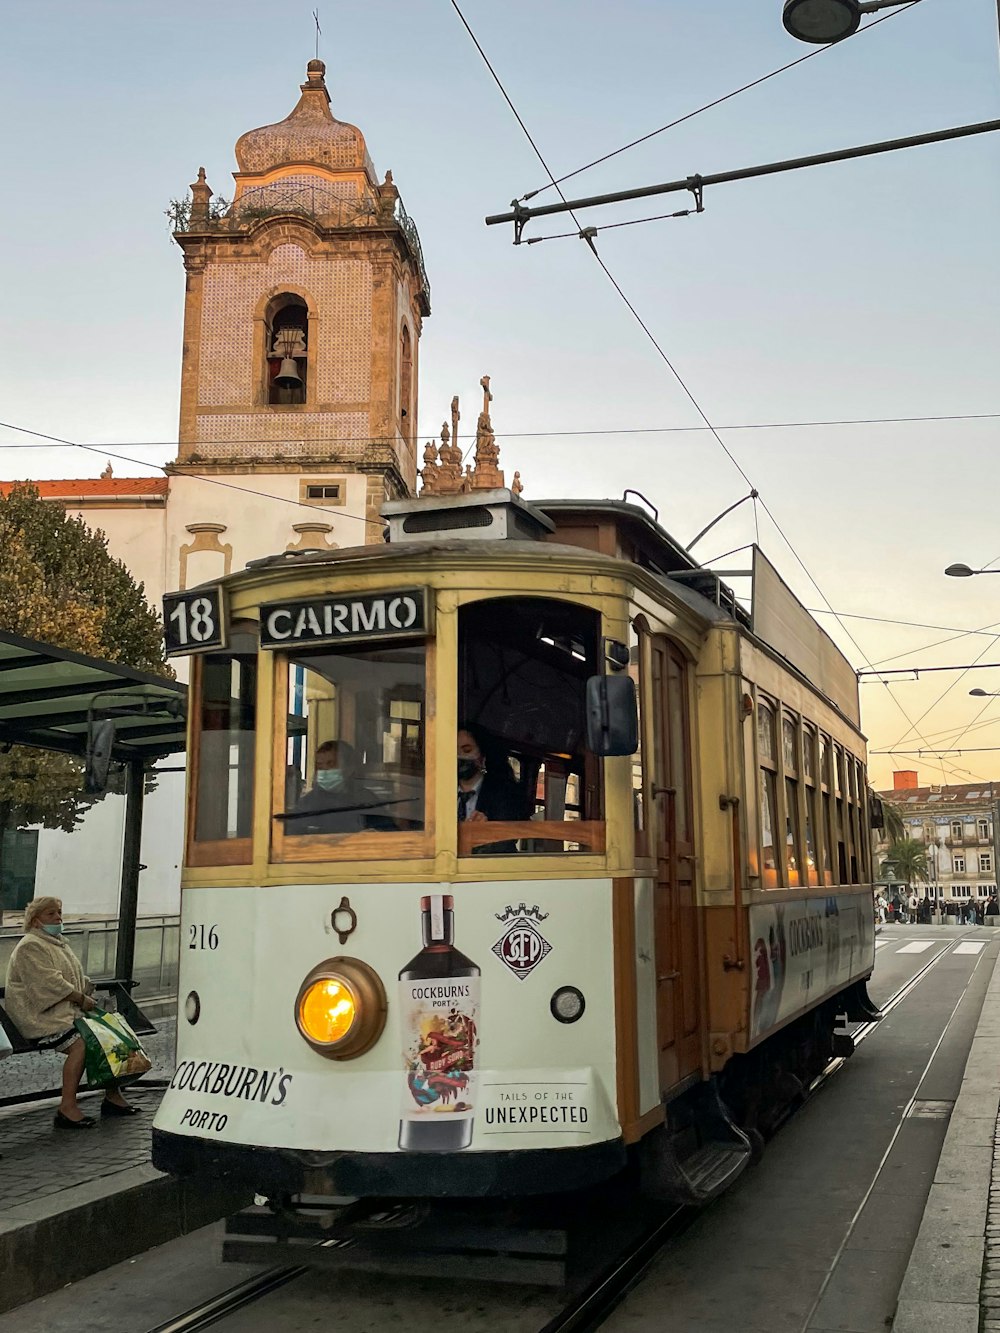 Un tram su una strada della città con una torre dell'orologio sullo sfondo